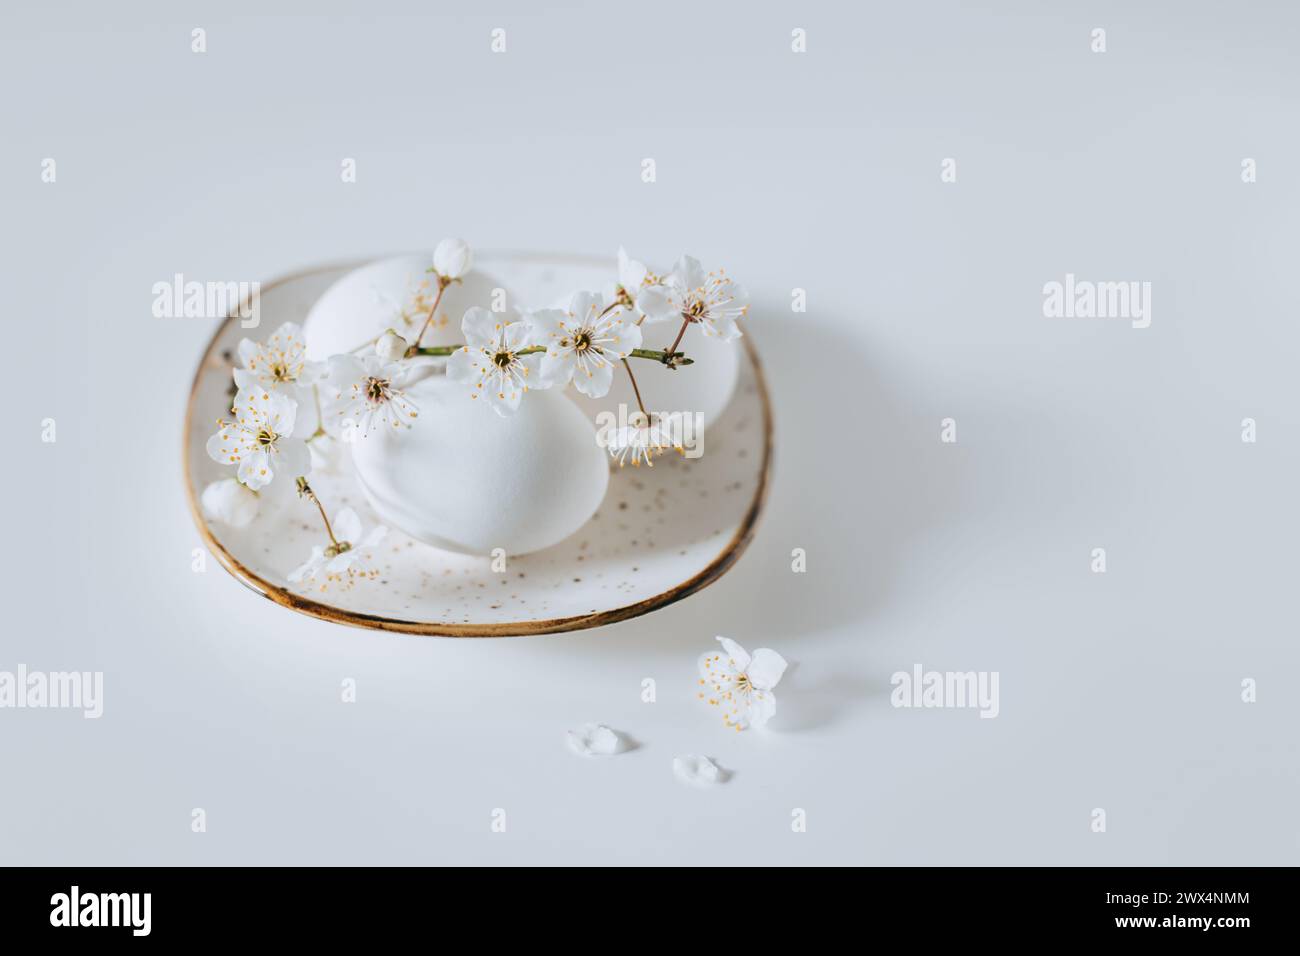 Belle branche avec fleur blanche et oeufs sur fond blanc. Concept minimal. Placer pour le texte. Banque D'Images